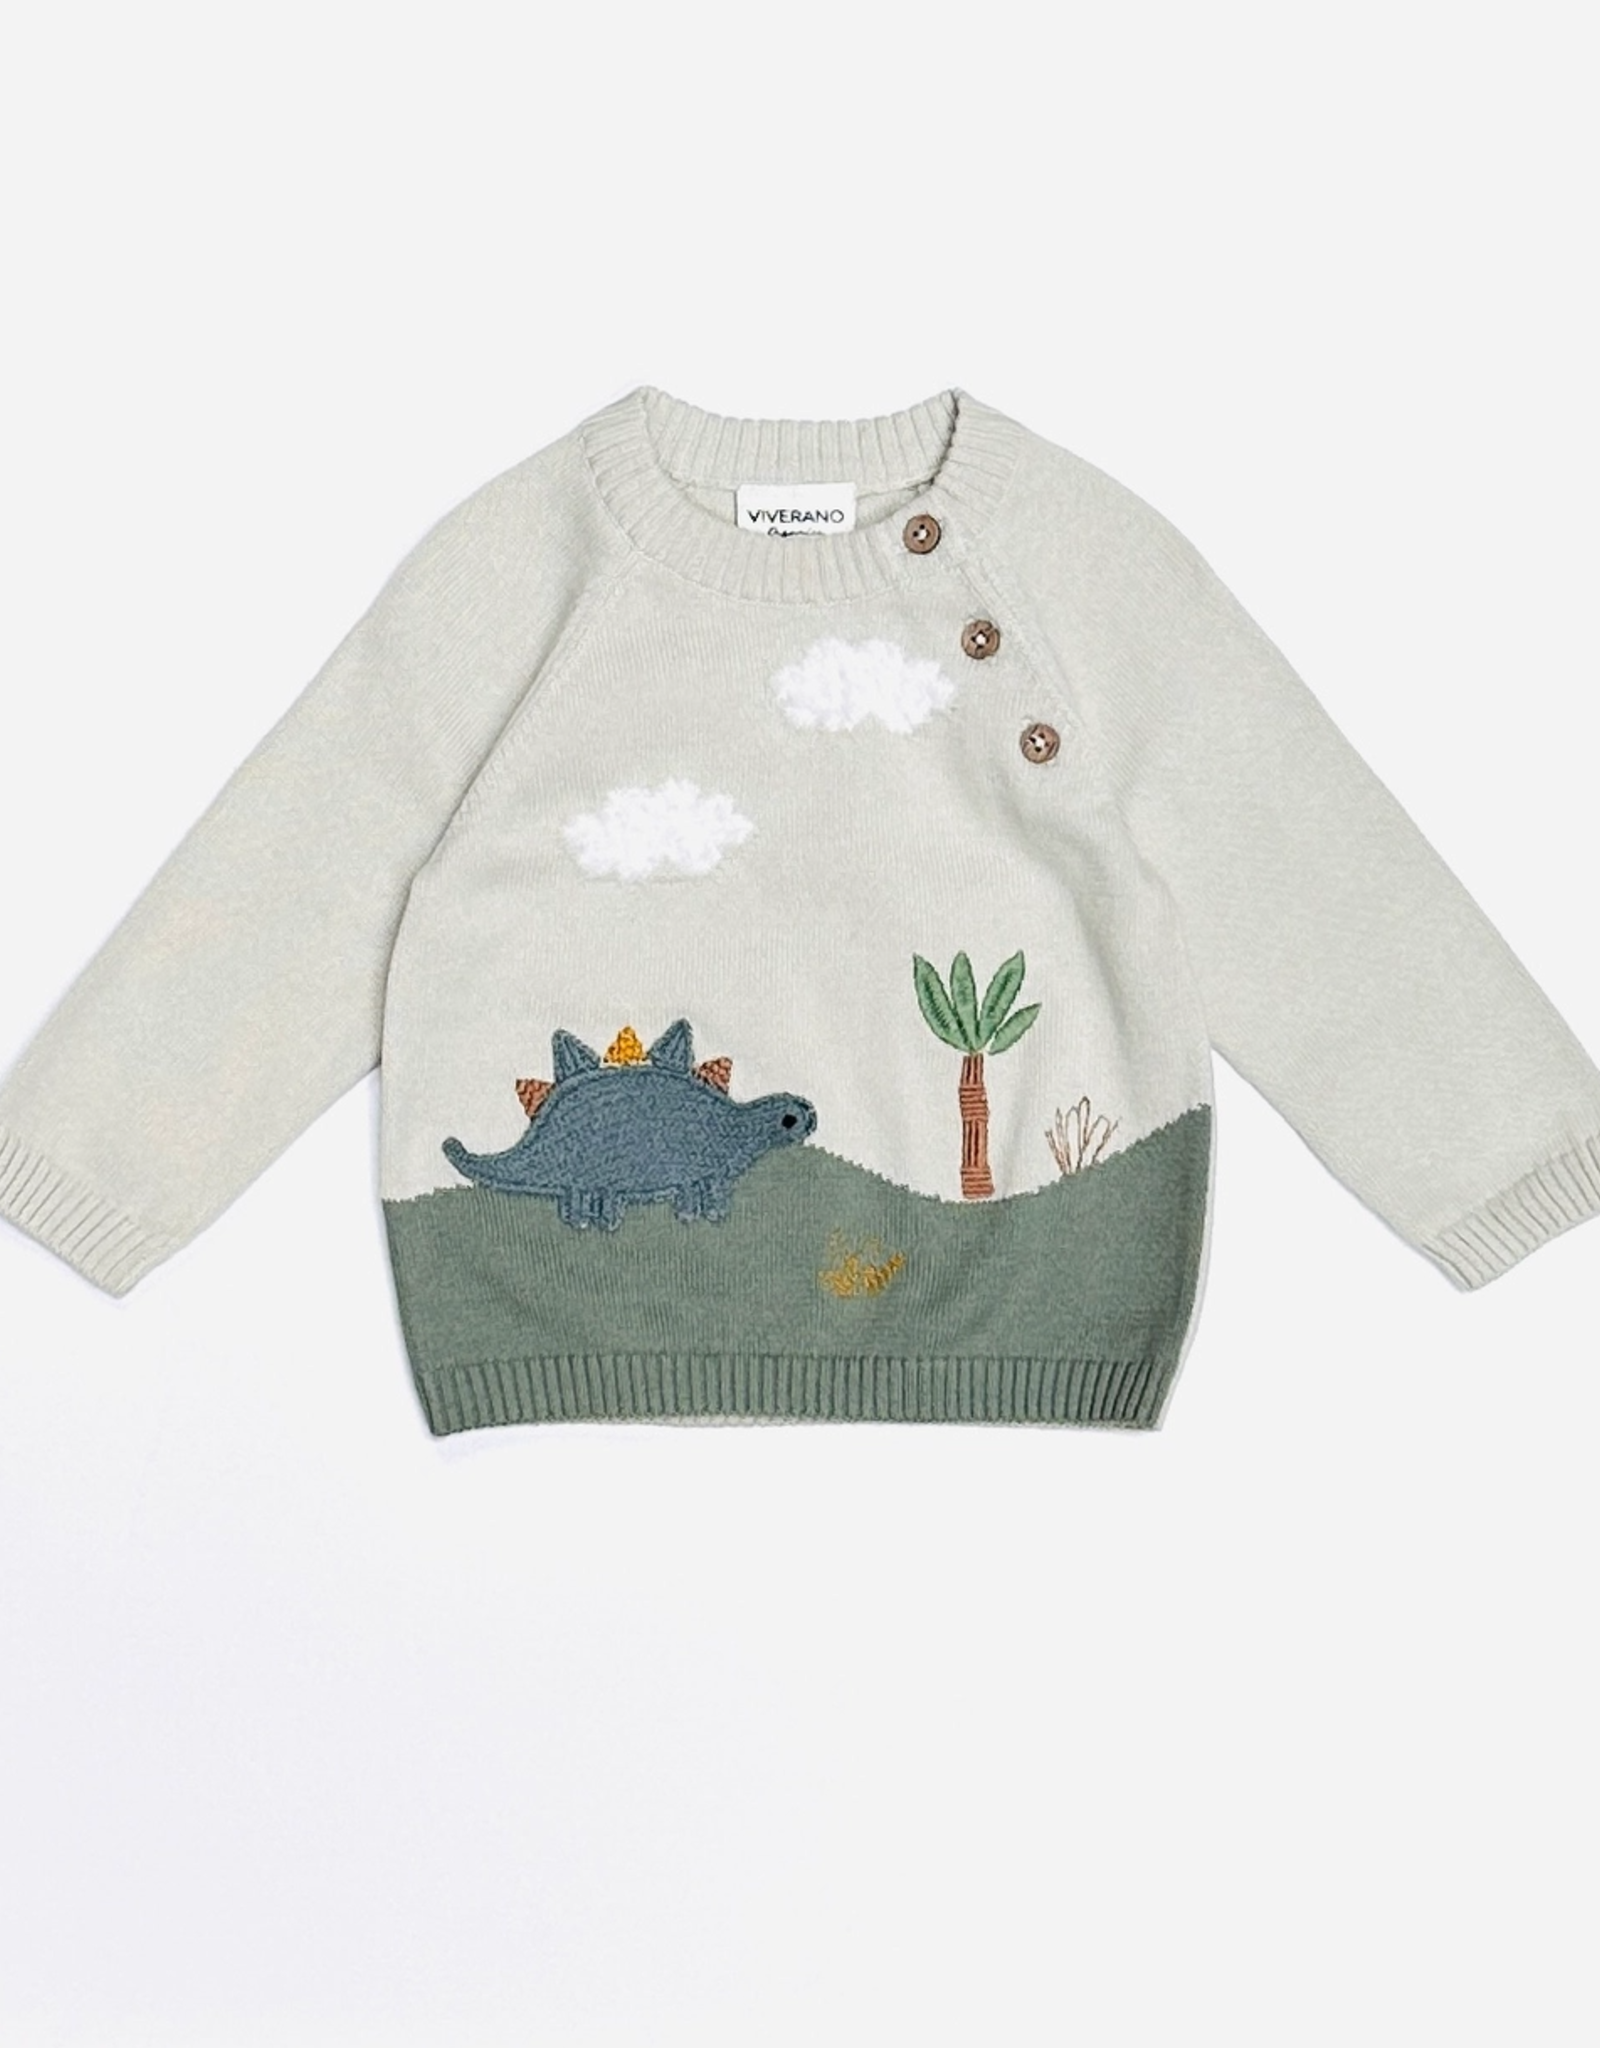 Viverano Dino Applique Button Pullover Sweater - Stone